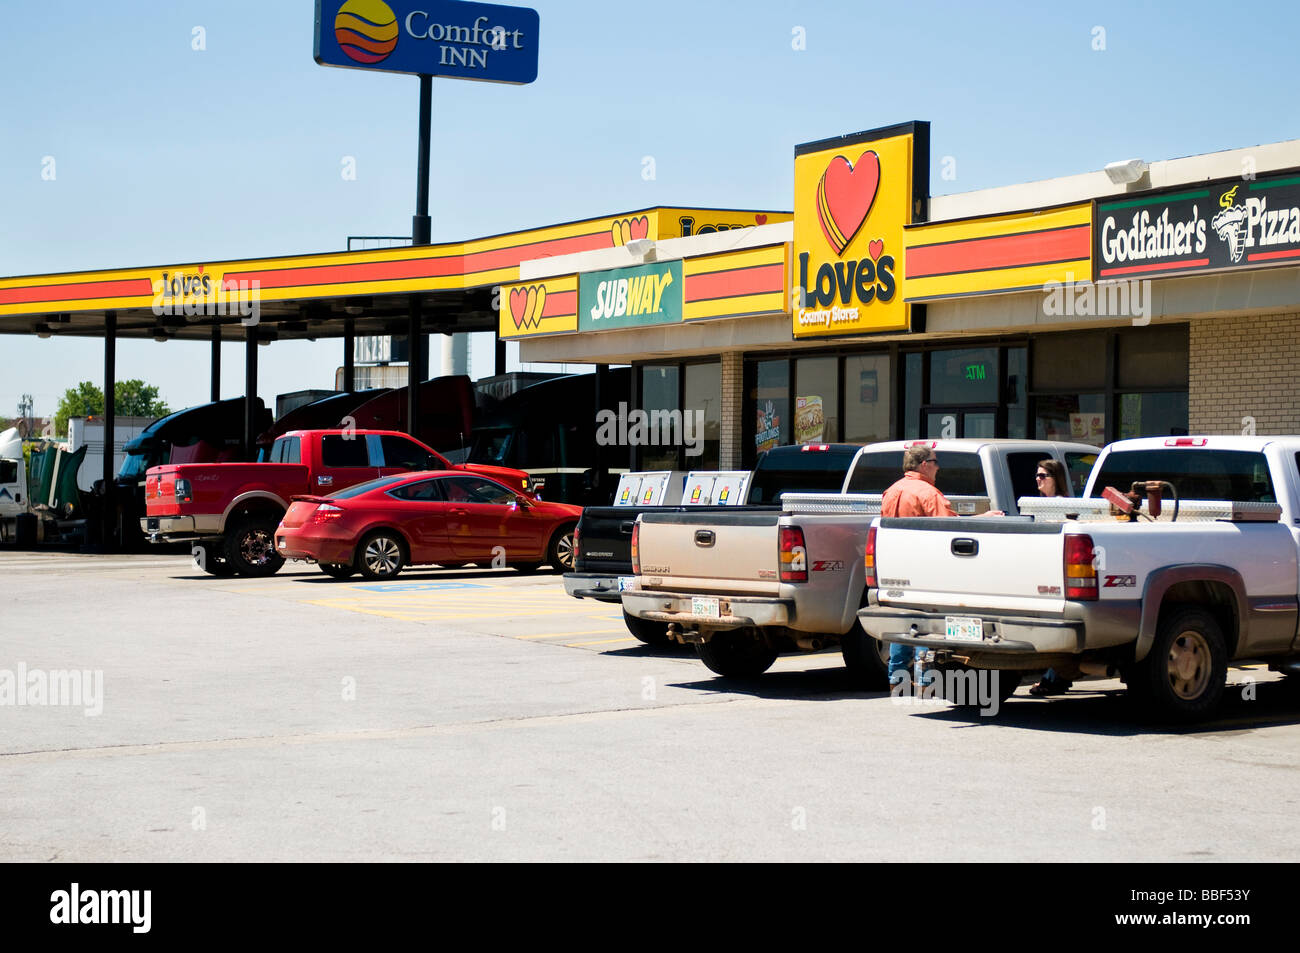 Love's Country Store, une chaîne de magasin de proximité et station d'essence à côté de Godfather's Pizza à Oklahoma City, Oklahoma, USA. Banque D'Images